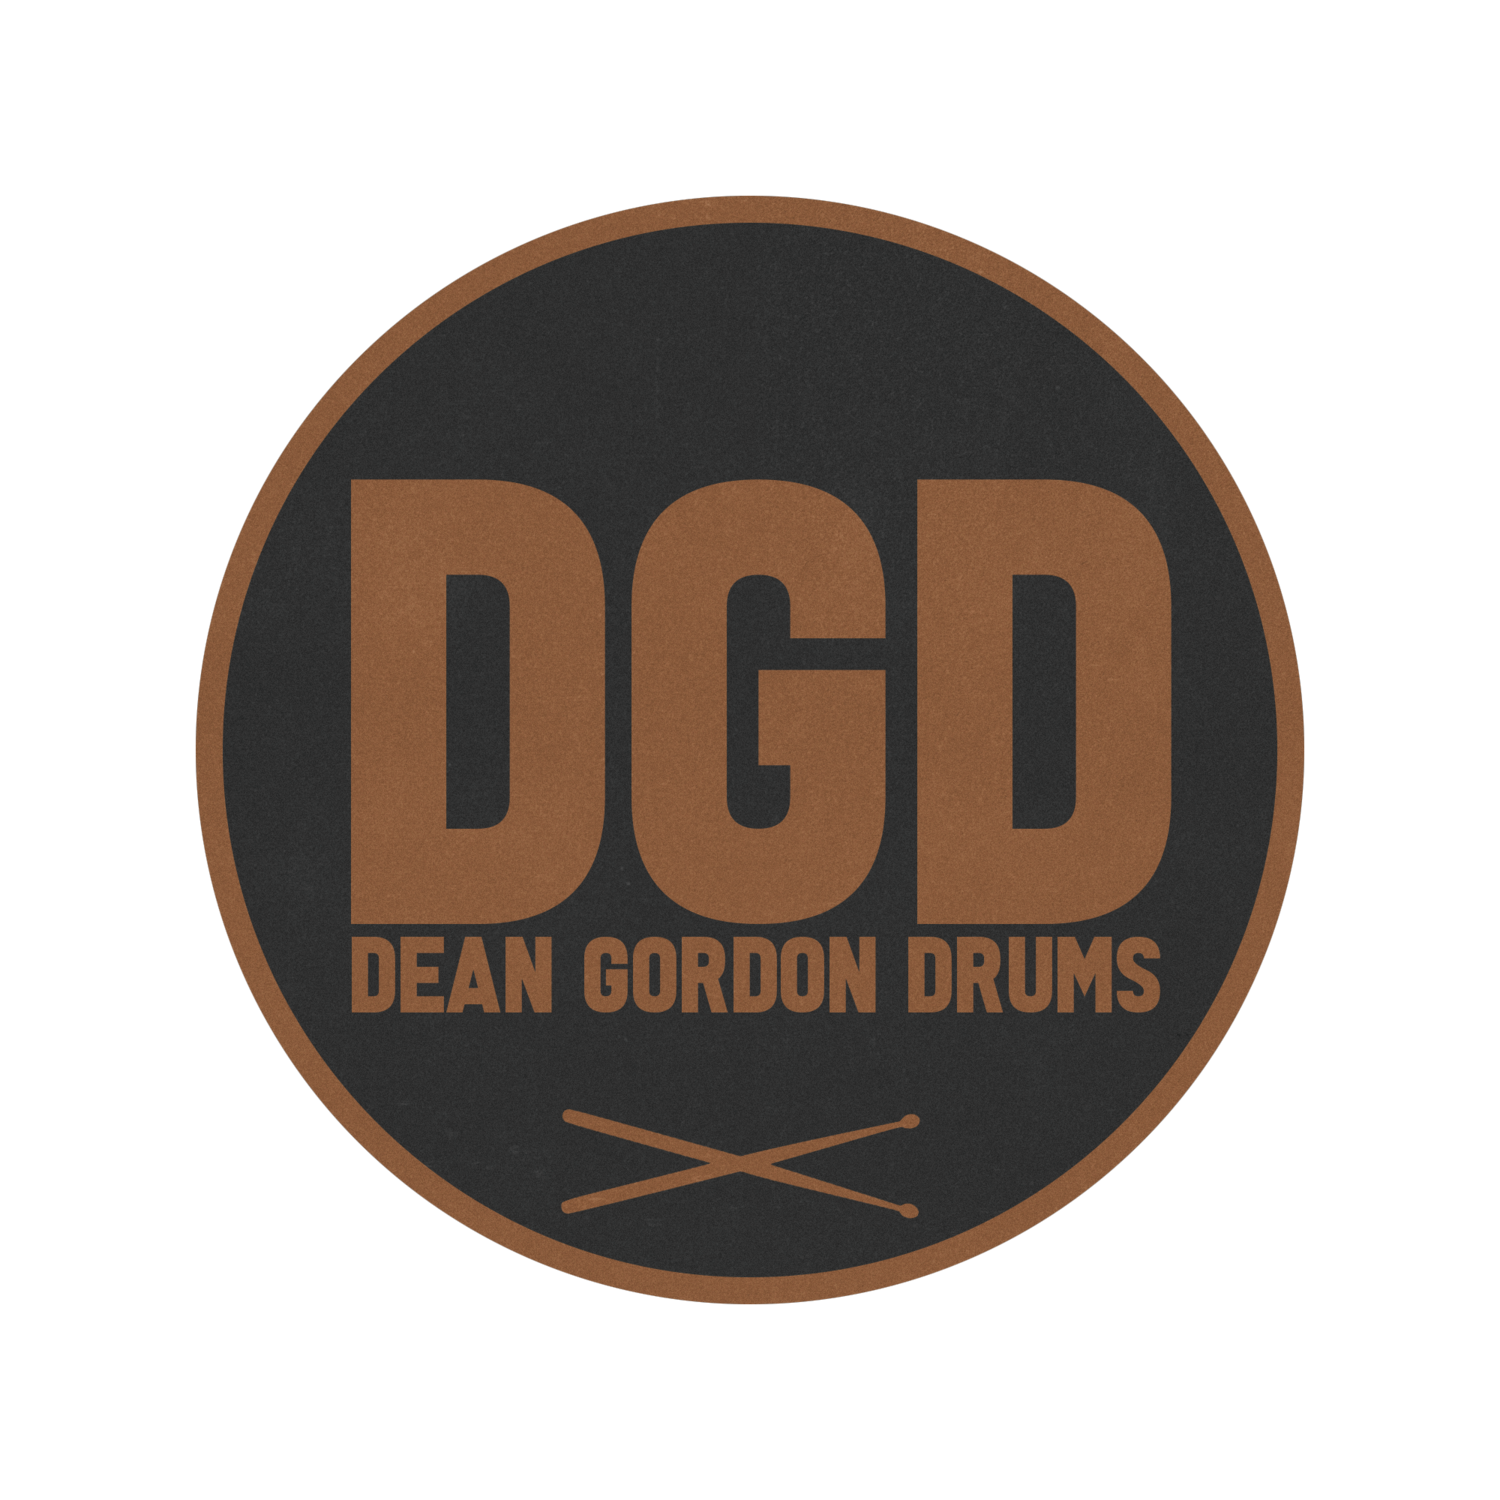 Dean Gordon Drums